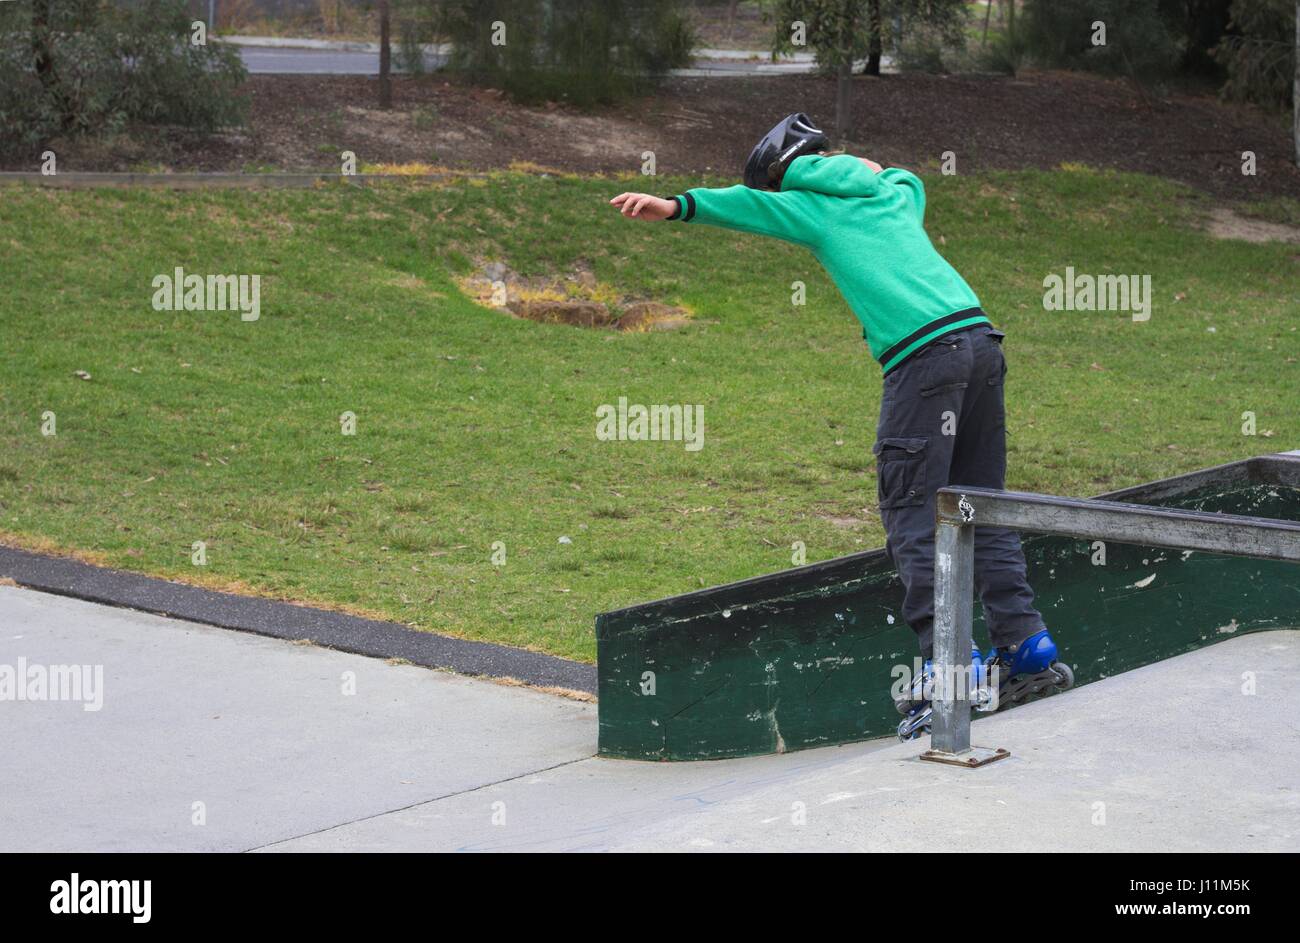 Jeune adolescent vacillant sur patins à descendre une rampe Photo Stock -  Alamy